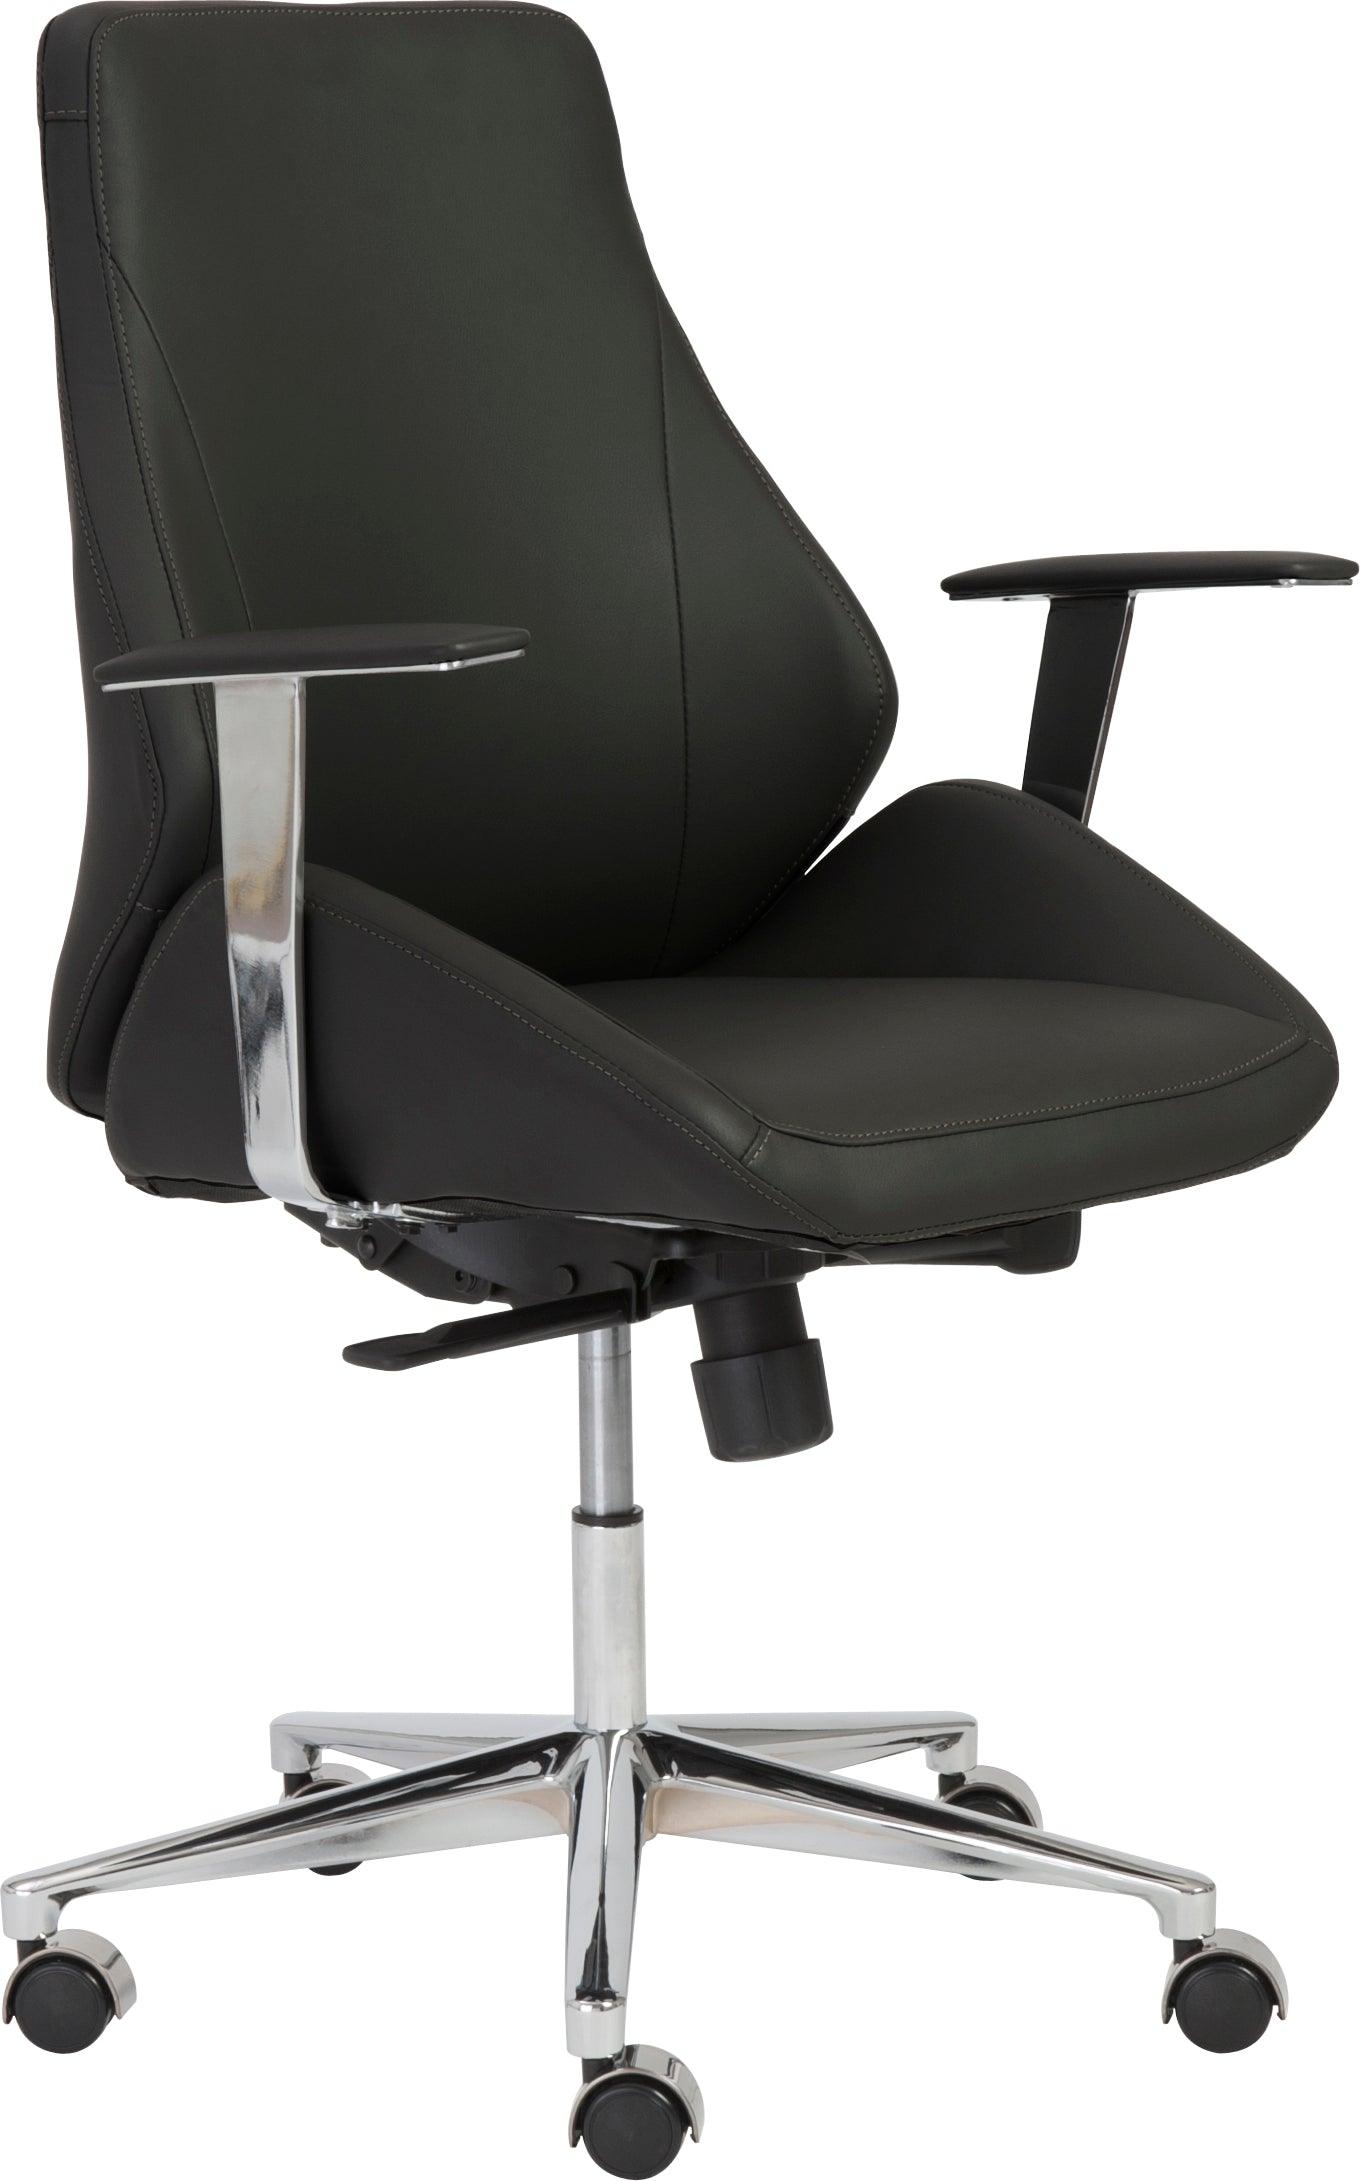 Buy Bergen Low Back Office Chair Black